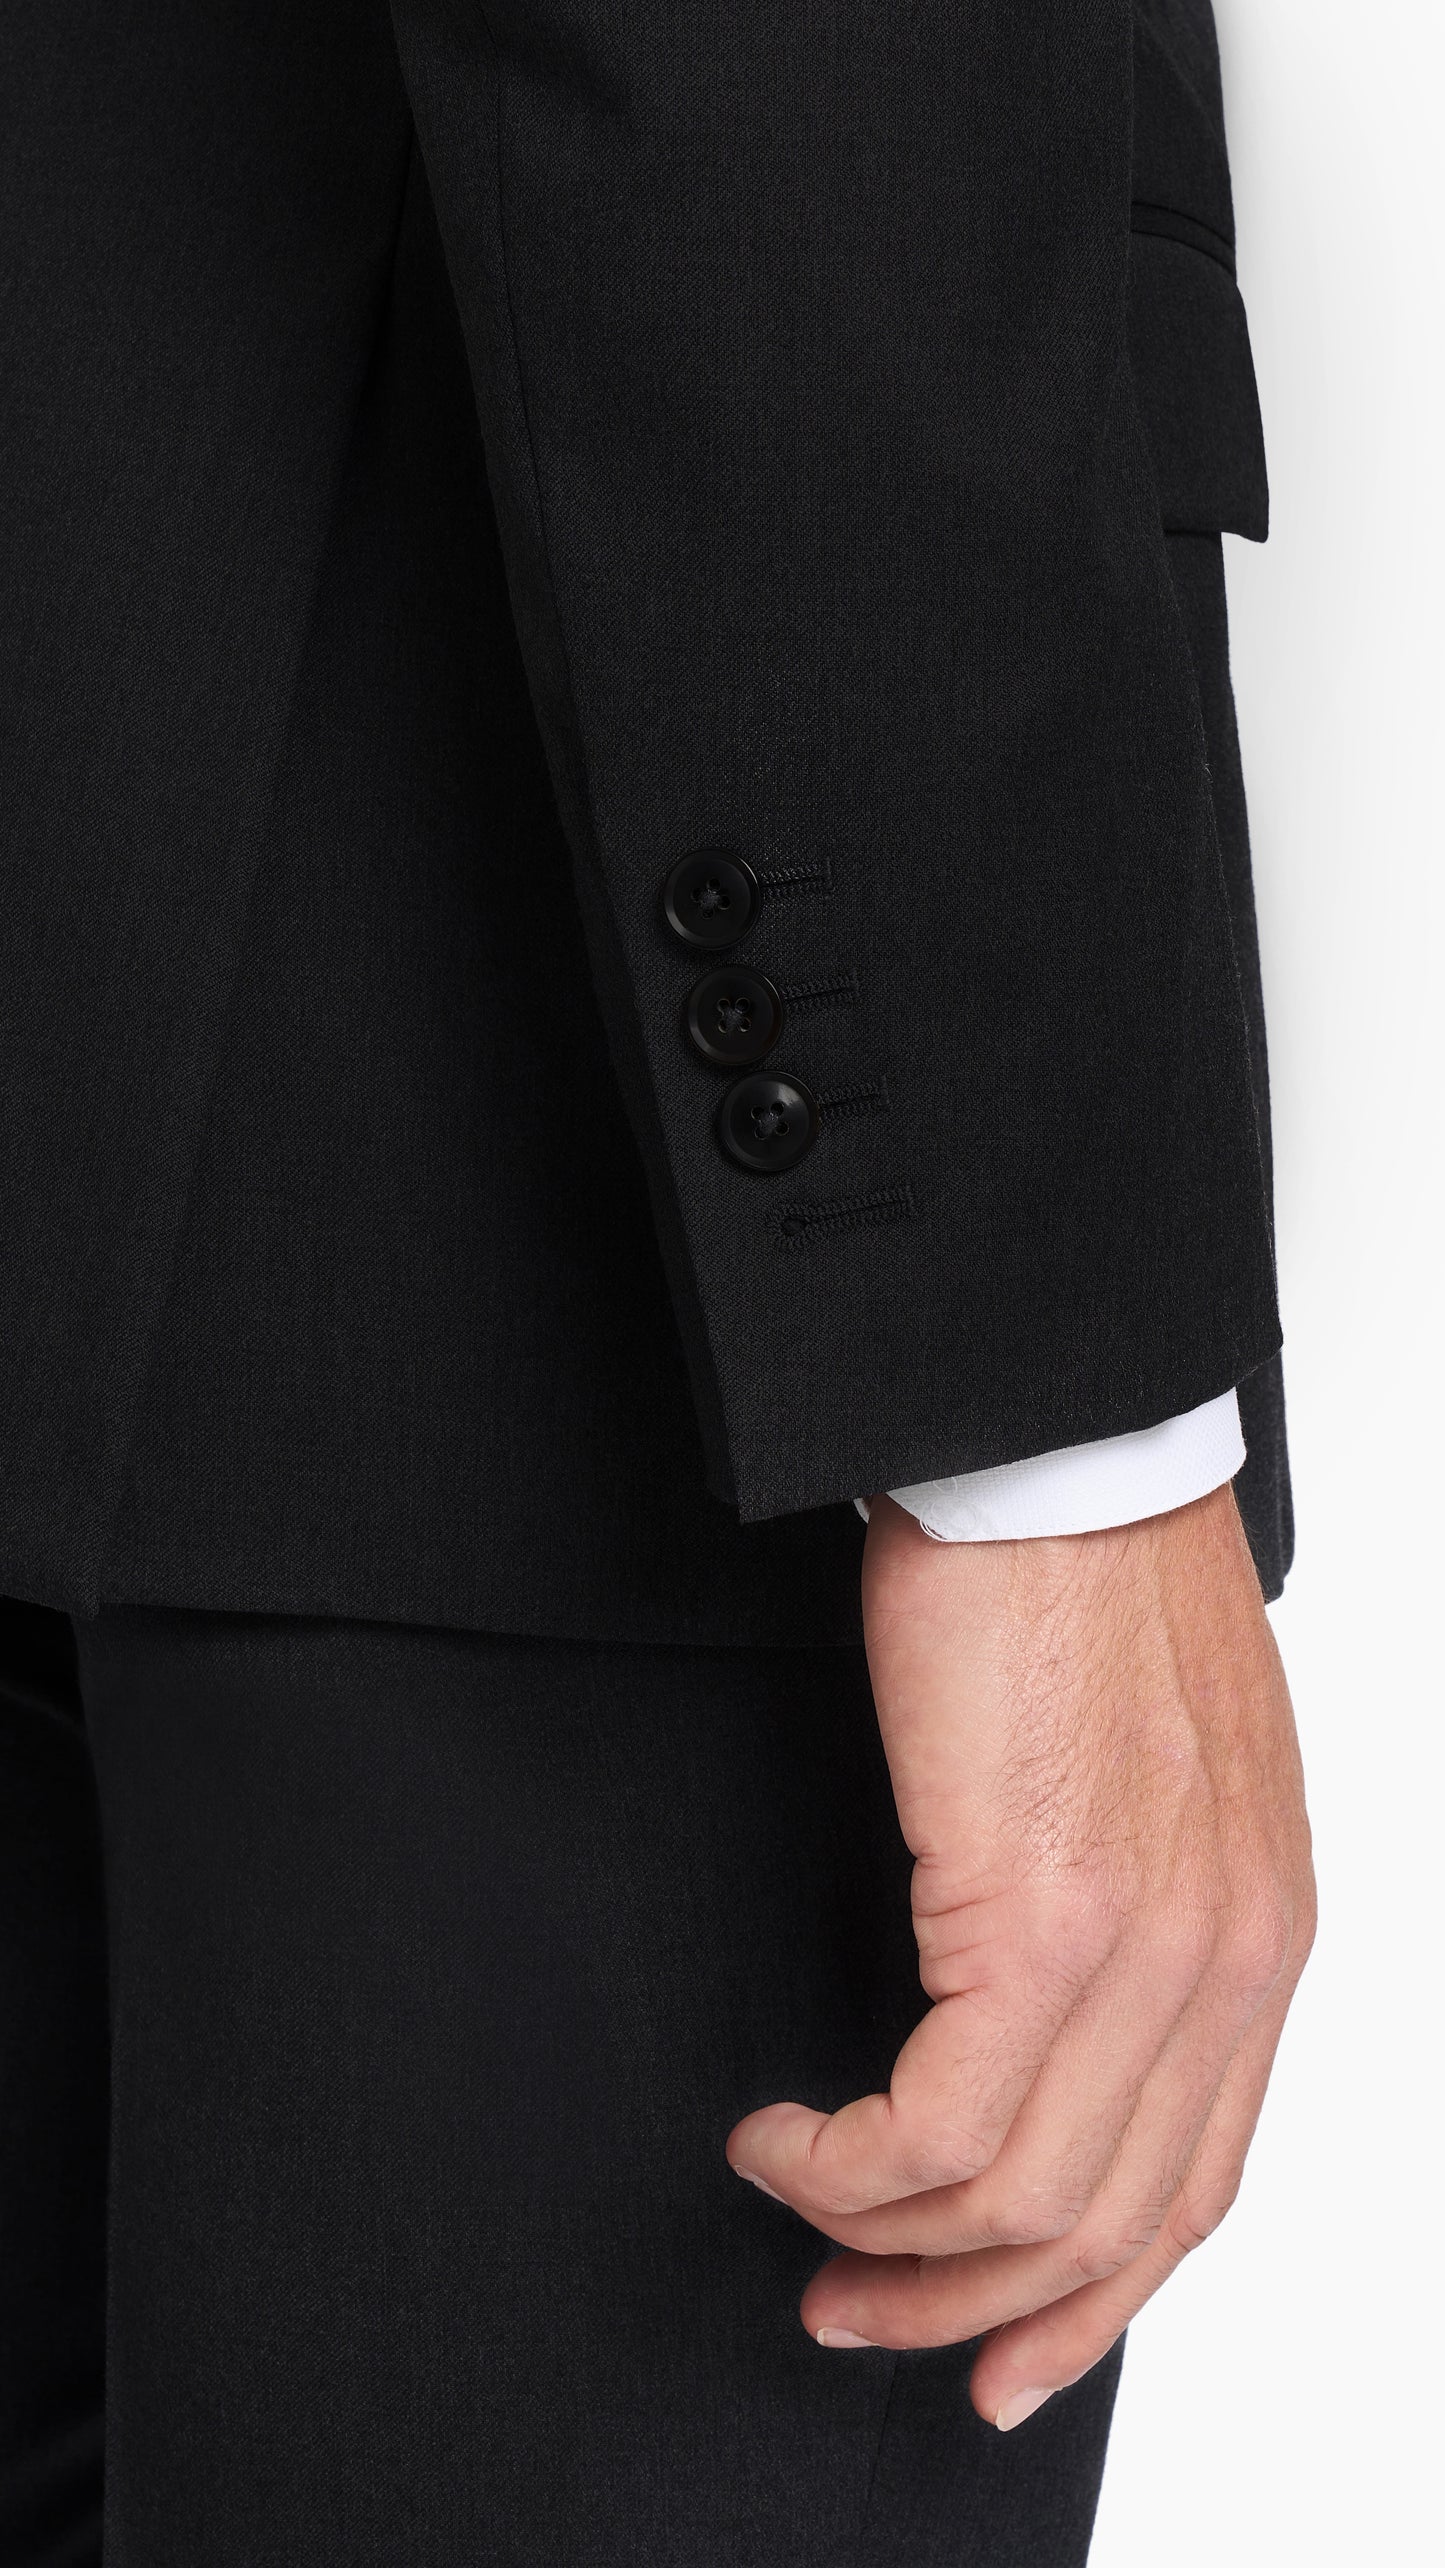 ES Essentials Black Twill Custom Suit